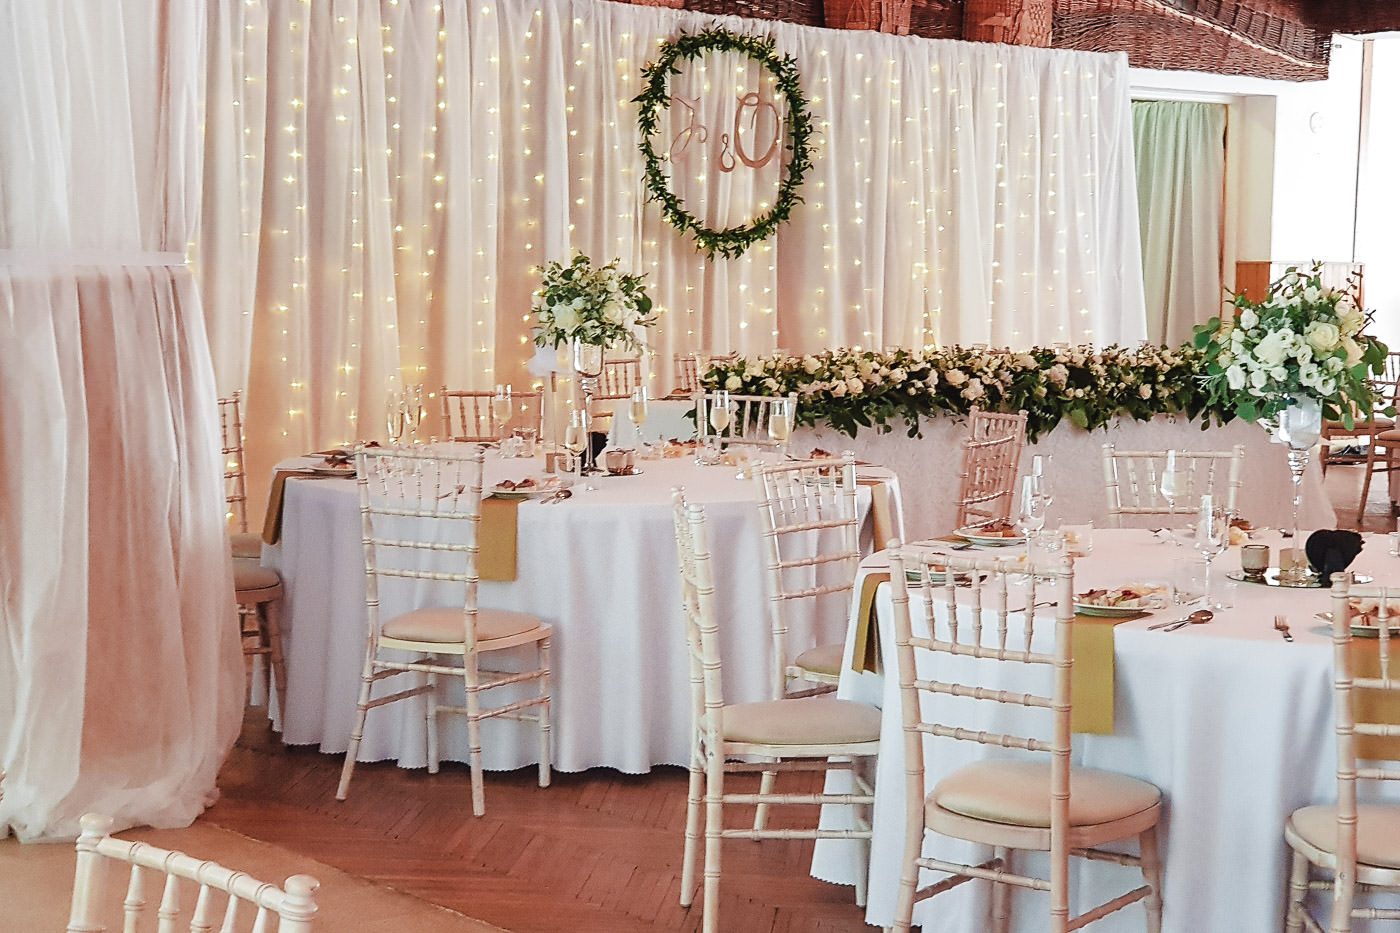 Susan&Sis decor svadobna vyzdoba – dekorovanie- white&green, greenery svadobna vyzdoba, bielo zelena svadba,